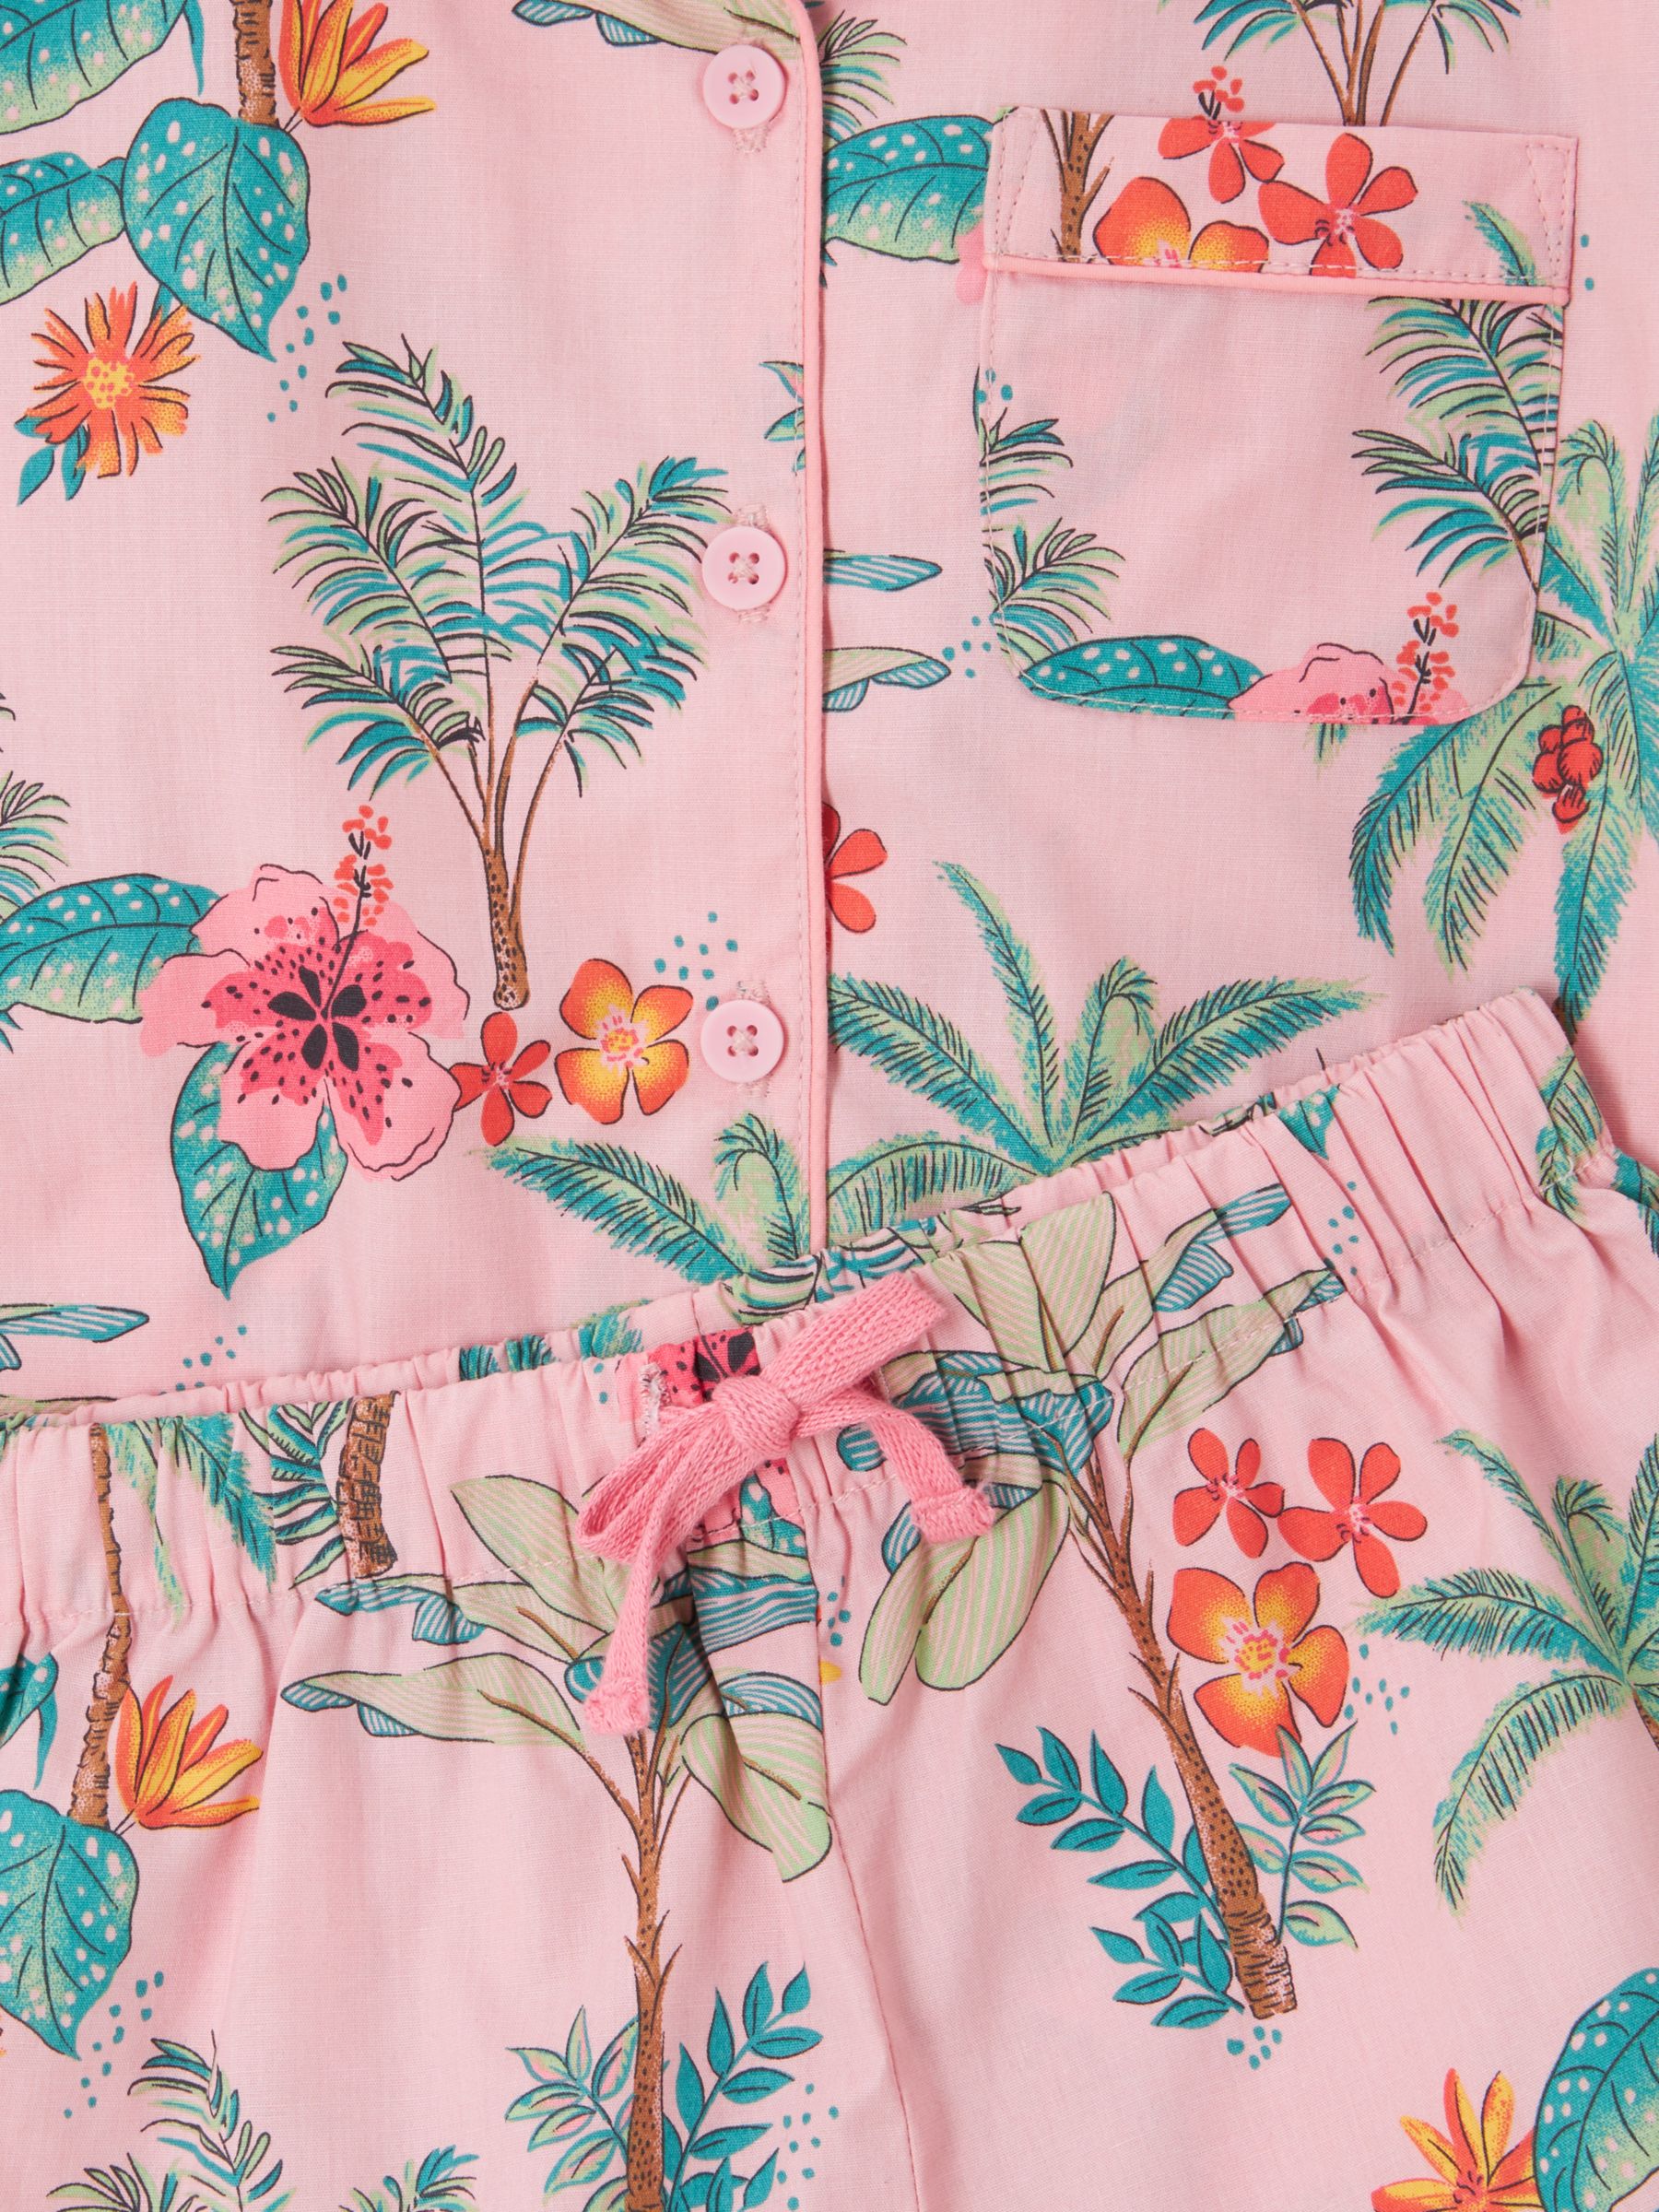 Buy John Lewis Kids' Hibiscus Palm Shirt Short Pyjama Set, Pink Online at johnlewis.com